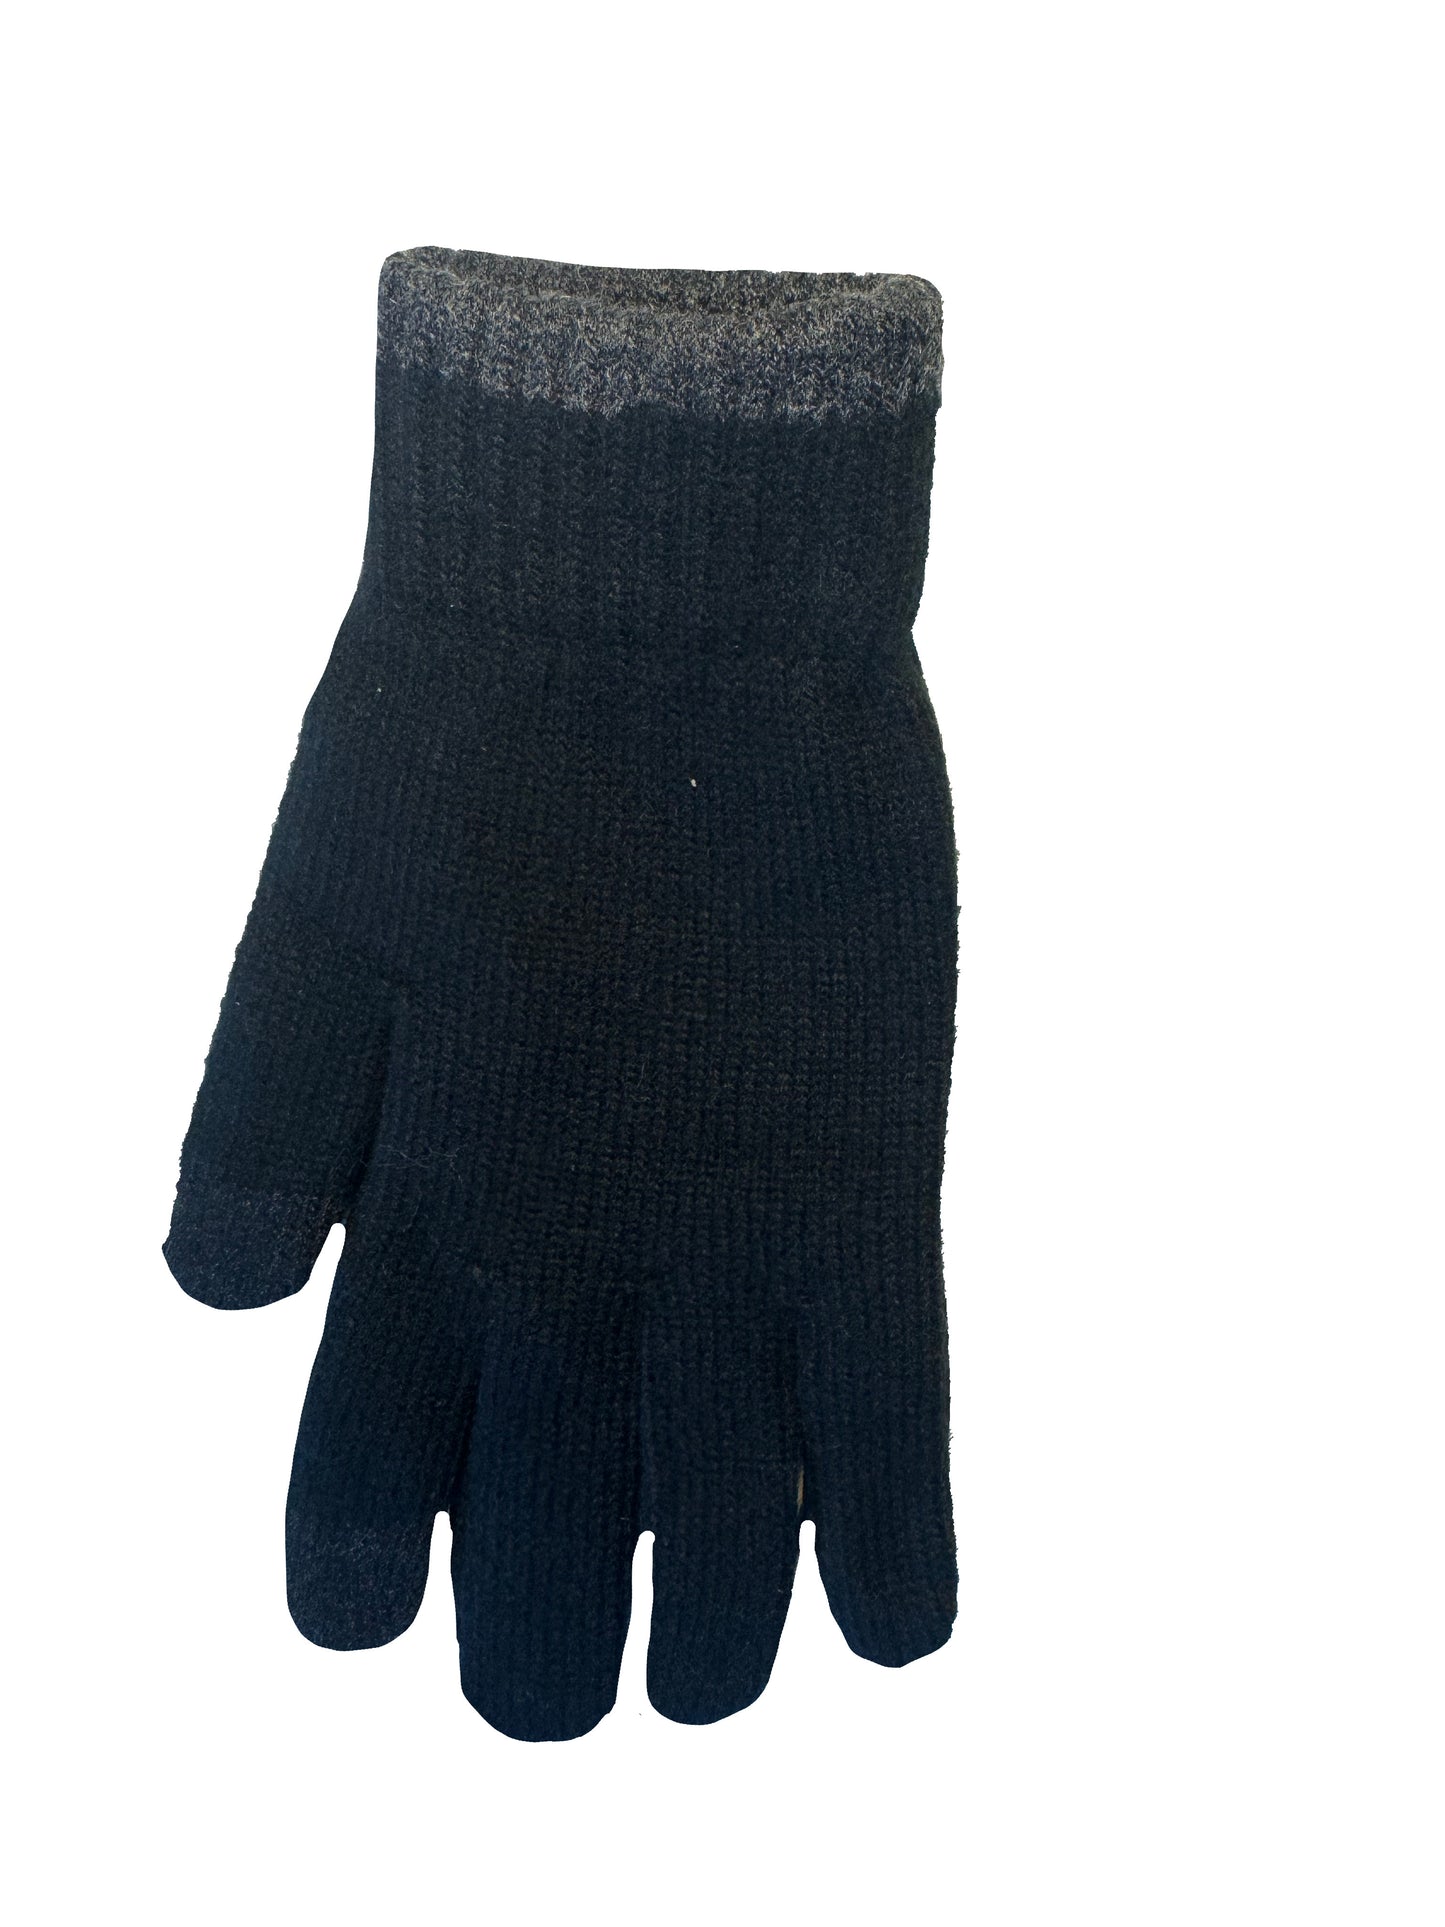 Touchscreen gloves